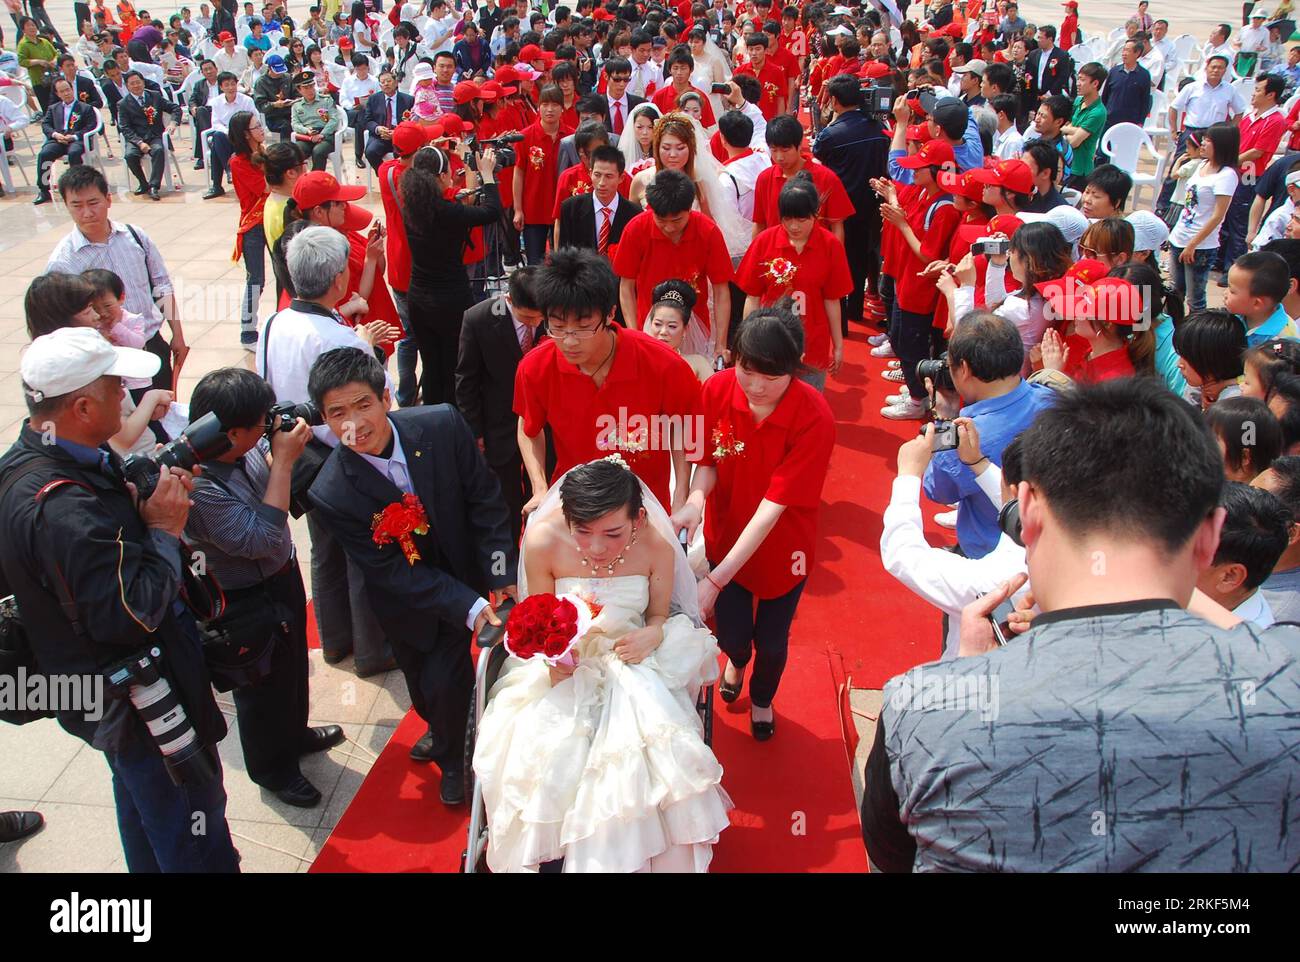 Bildnummer : 55348610 Datum : 15.05.2011 Copyright : imago/Xinhua (110515) -- WEIFANG, 15 mai 2011 (Xinhua) -- des couples prennent part à un mariage de masse pour handicapés à Weifang, dans la province du Shandong de l'est de la Chine, le 15 mai 2011. Le premier mariage de masse pour les handicapés, avec la participation de 18 couples, a eu lieu dans la ville de Weifang le dimanche, la 21e Journée nationale de l'aide aux handicapés, avec pour thème l'amélioration des moyens de subsistance des handicapés, la protection des droits et des intérêts des handicapés. (Xinhua/Wang Lijun)(zxh) CHINE-SHANDONG-JOURNÉE NATIONALE D'ASSISTANCE AUX HANDICAPÉS-MARIAGE COLLECTIF (CN) PUBLICATIONxNO Banque D'Images